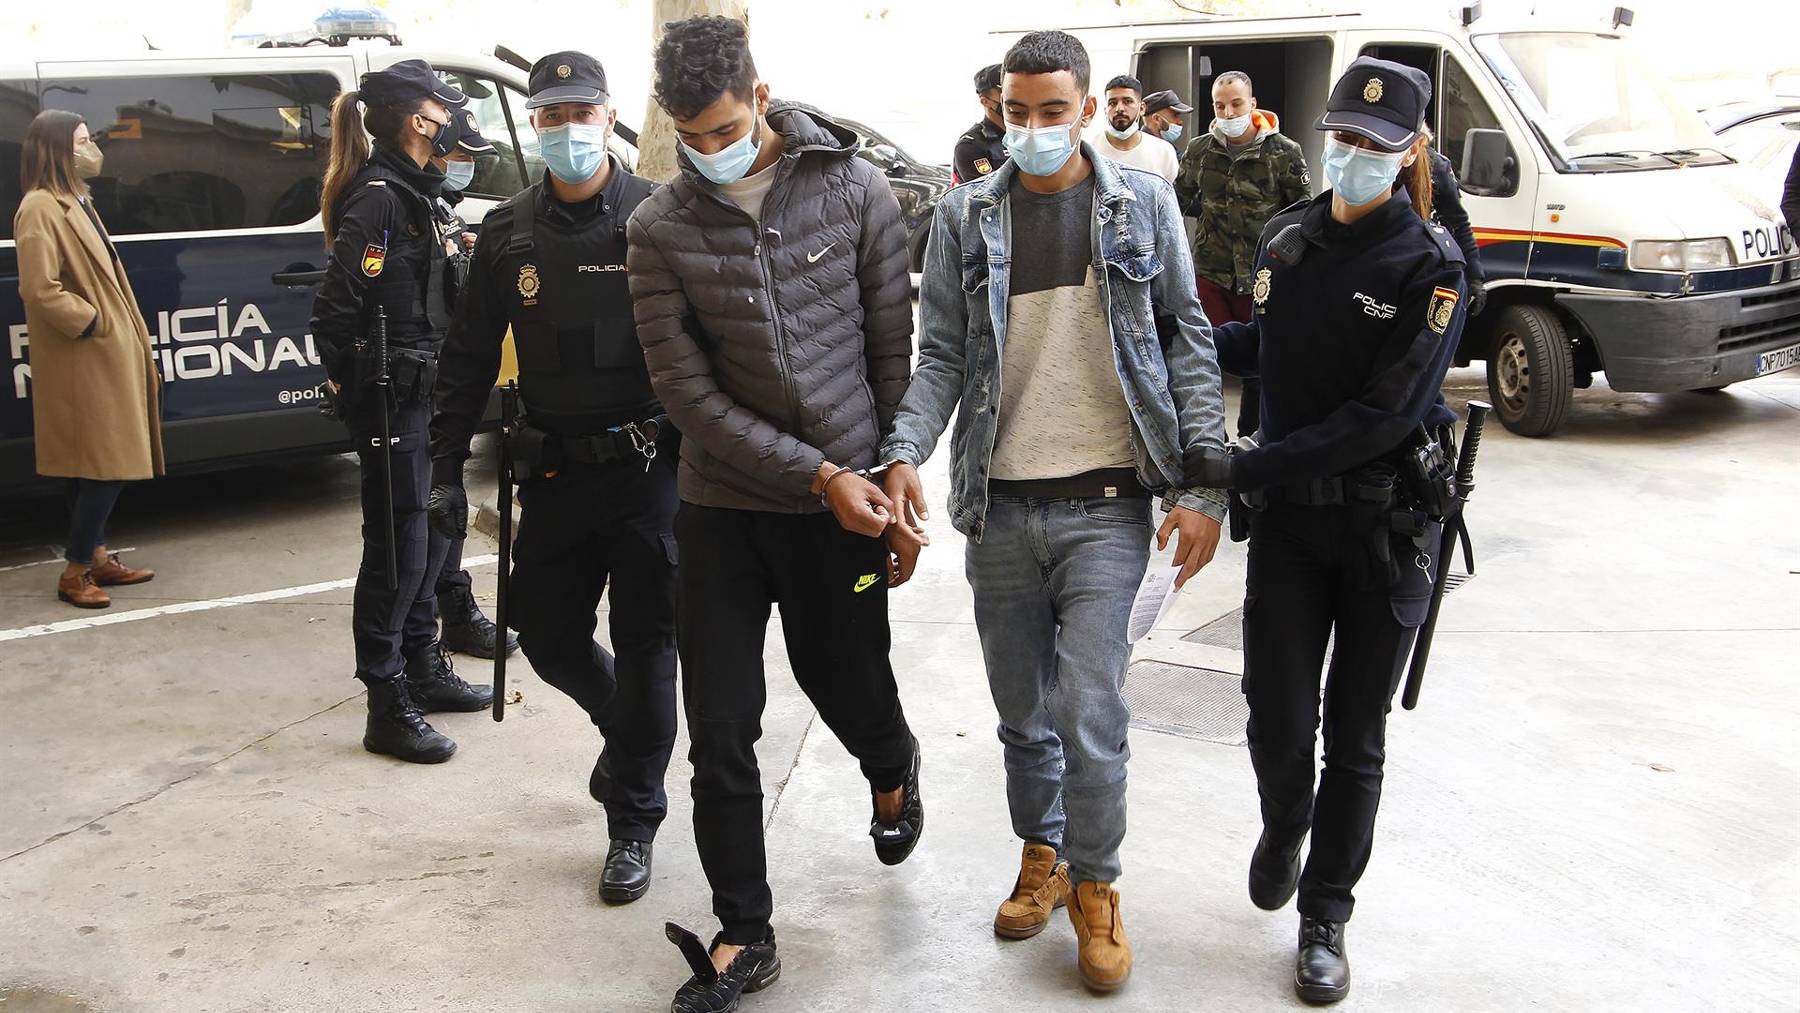 Dos de los marroquíes detenidos, a su llegada al Juzgado tras el arresto por el incidente en el aeropuerto de Palma.  (Europa Press)